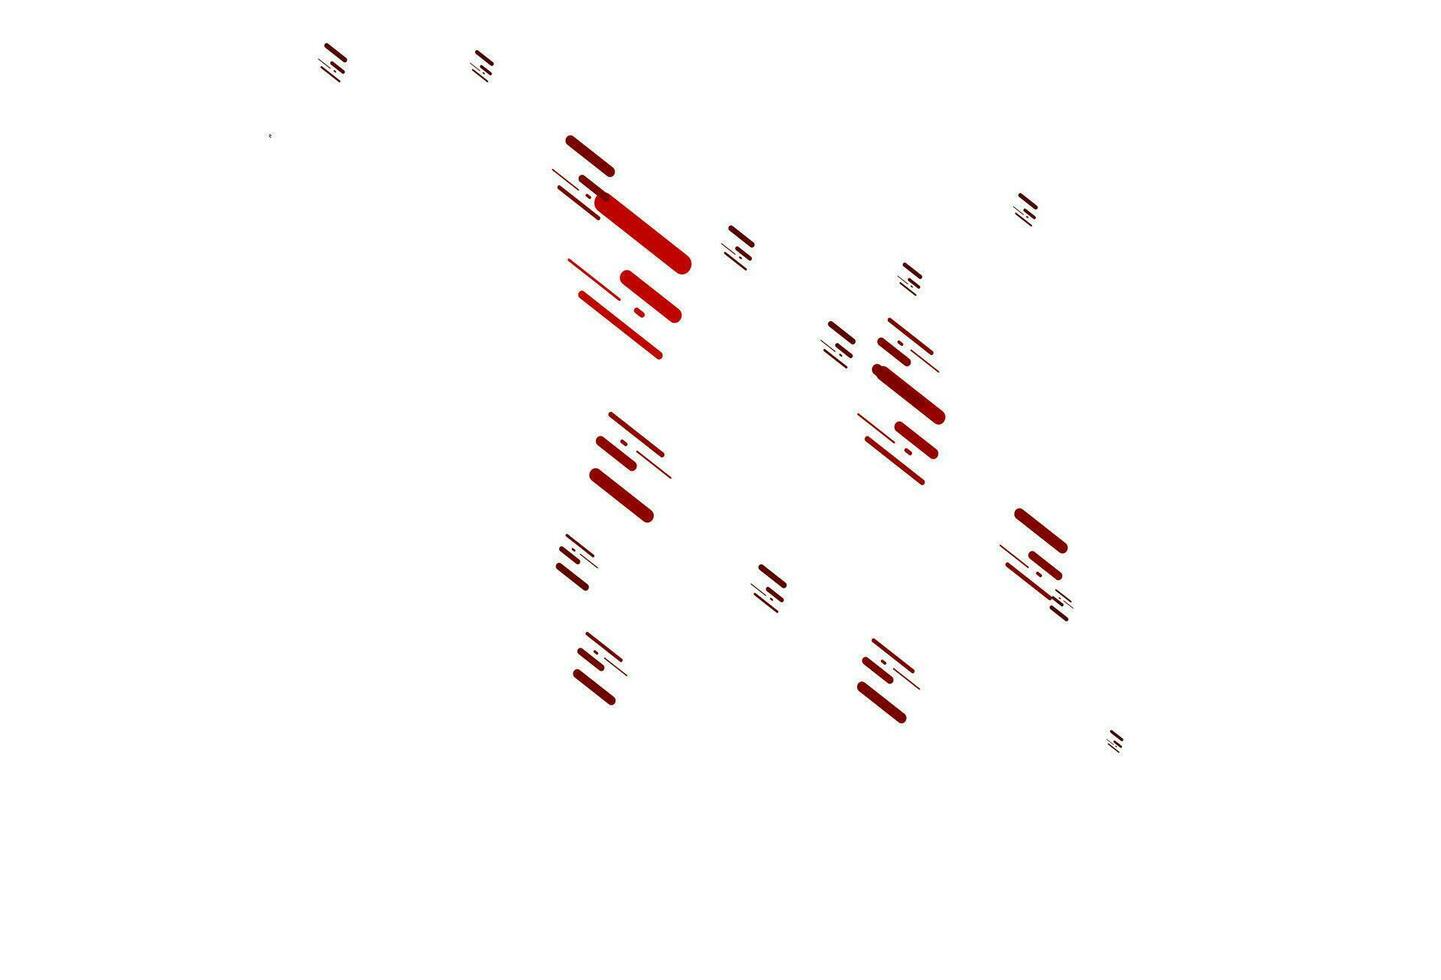 padrão de vetor vermelho claro com linhas estreitas.